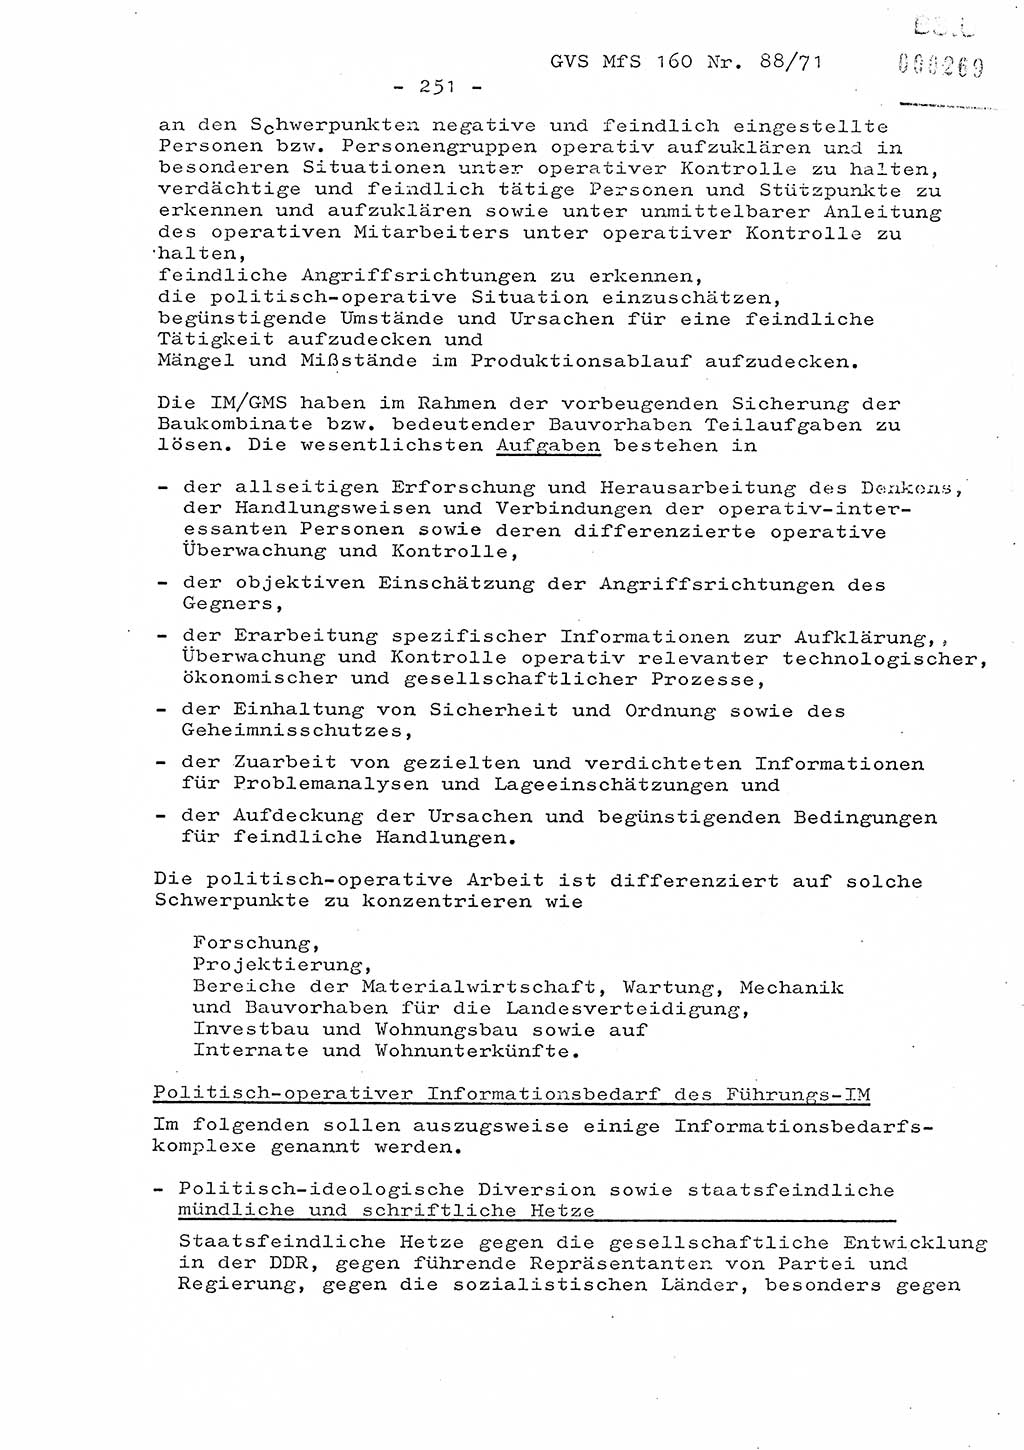 Dissertation Oberstleutnant Josef Schwarz (BV Schwerin), Major Fritz Amm (JHS), Hauptmann Peter Gräßler (JHS), Ministerium für Staatssicherheit (MfS) [Deutsche Demokratische Republik (DDR)], Juristische Hochschule (JHS), Geheime Verschlußsache (GVS) 160-88/71, Potsdam 1972, Seite 251 (Diss. MfS DDR JHS GVS 160-88/71 1972, S. 251)